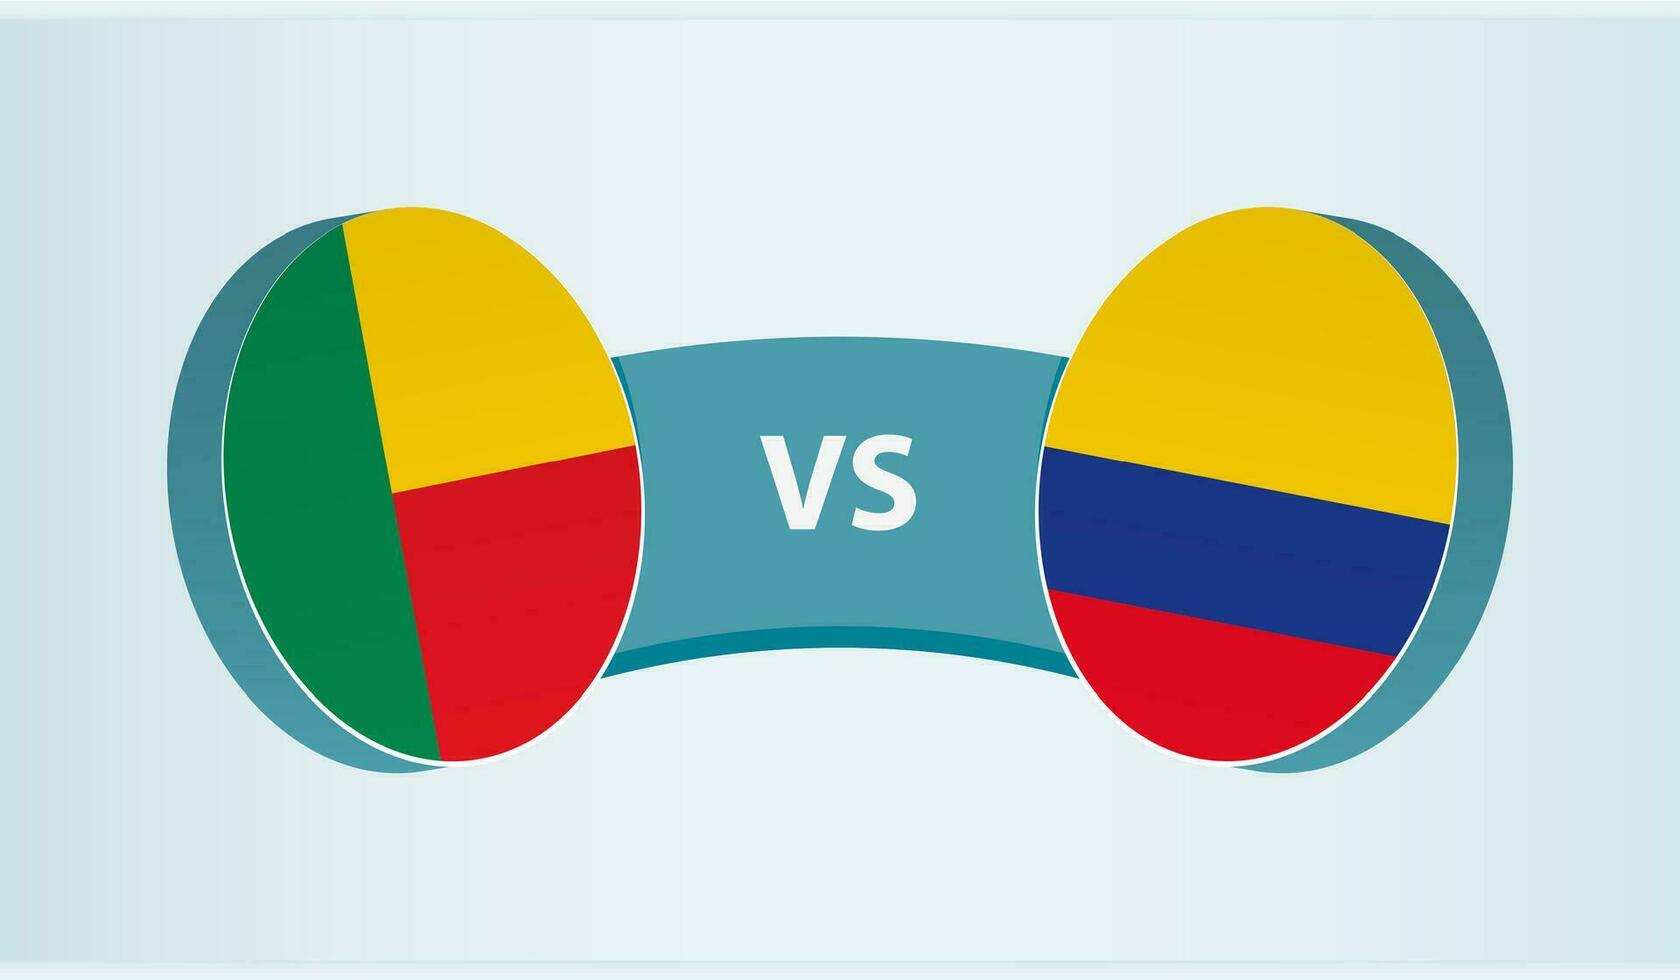 benin mot colombia, team sporter konkurrens begrepp. vektor